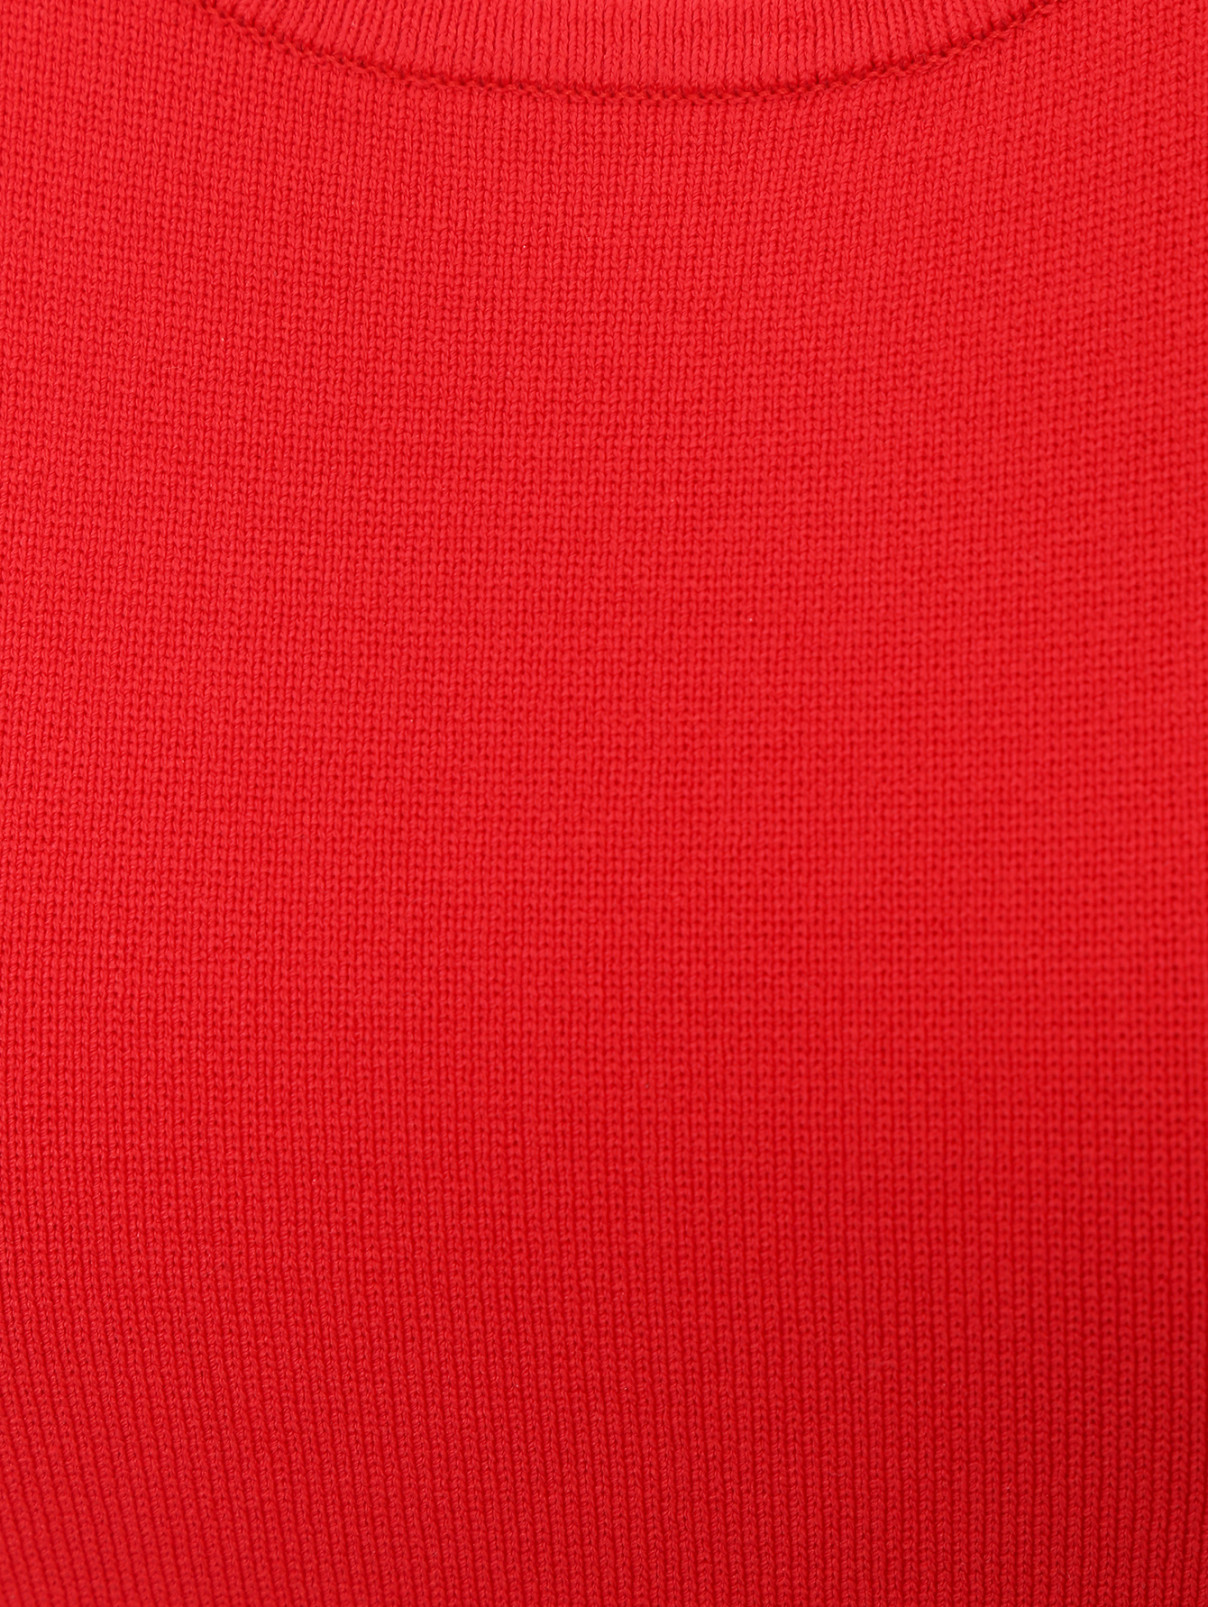 Платье-мини без рукавов Michael by Michael Kors  –  Деталь  – Цвет:  Красный